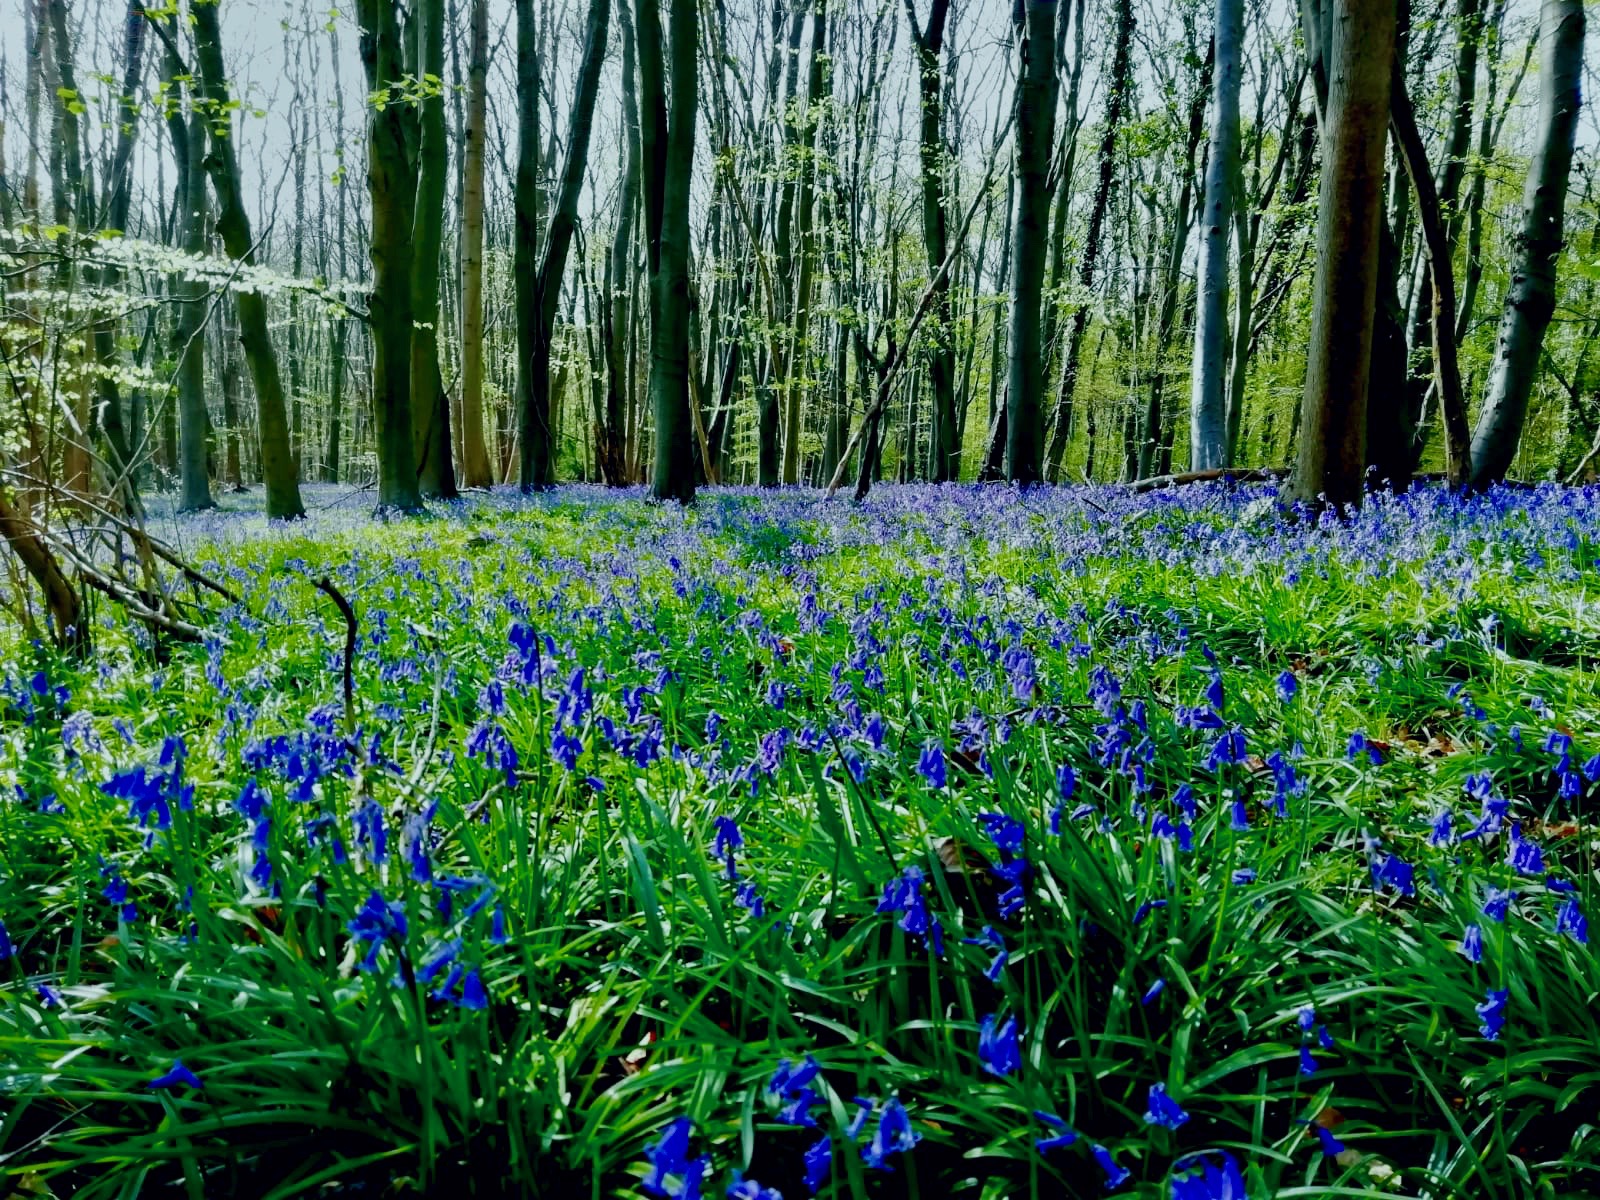 Bluebell Forest in full bloom